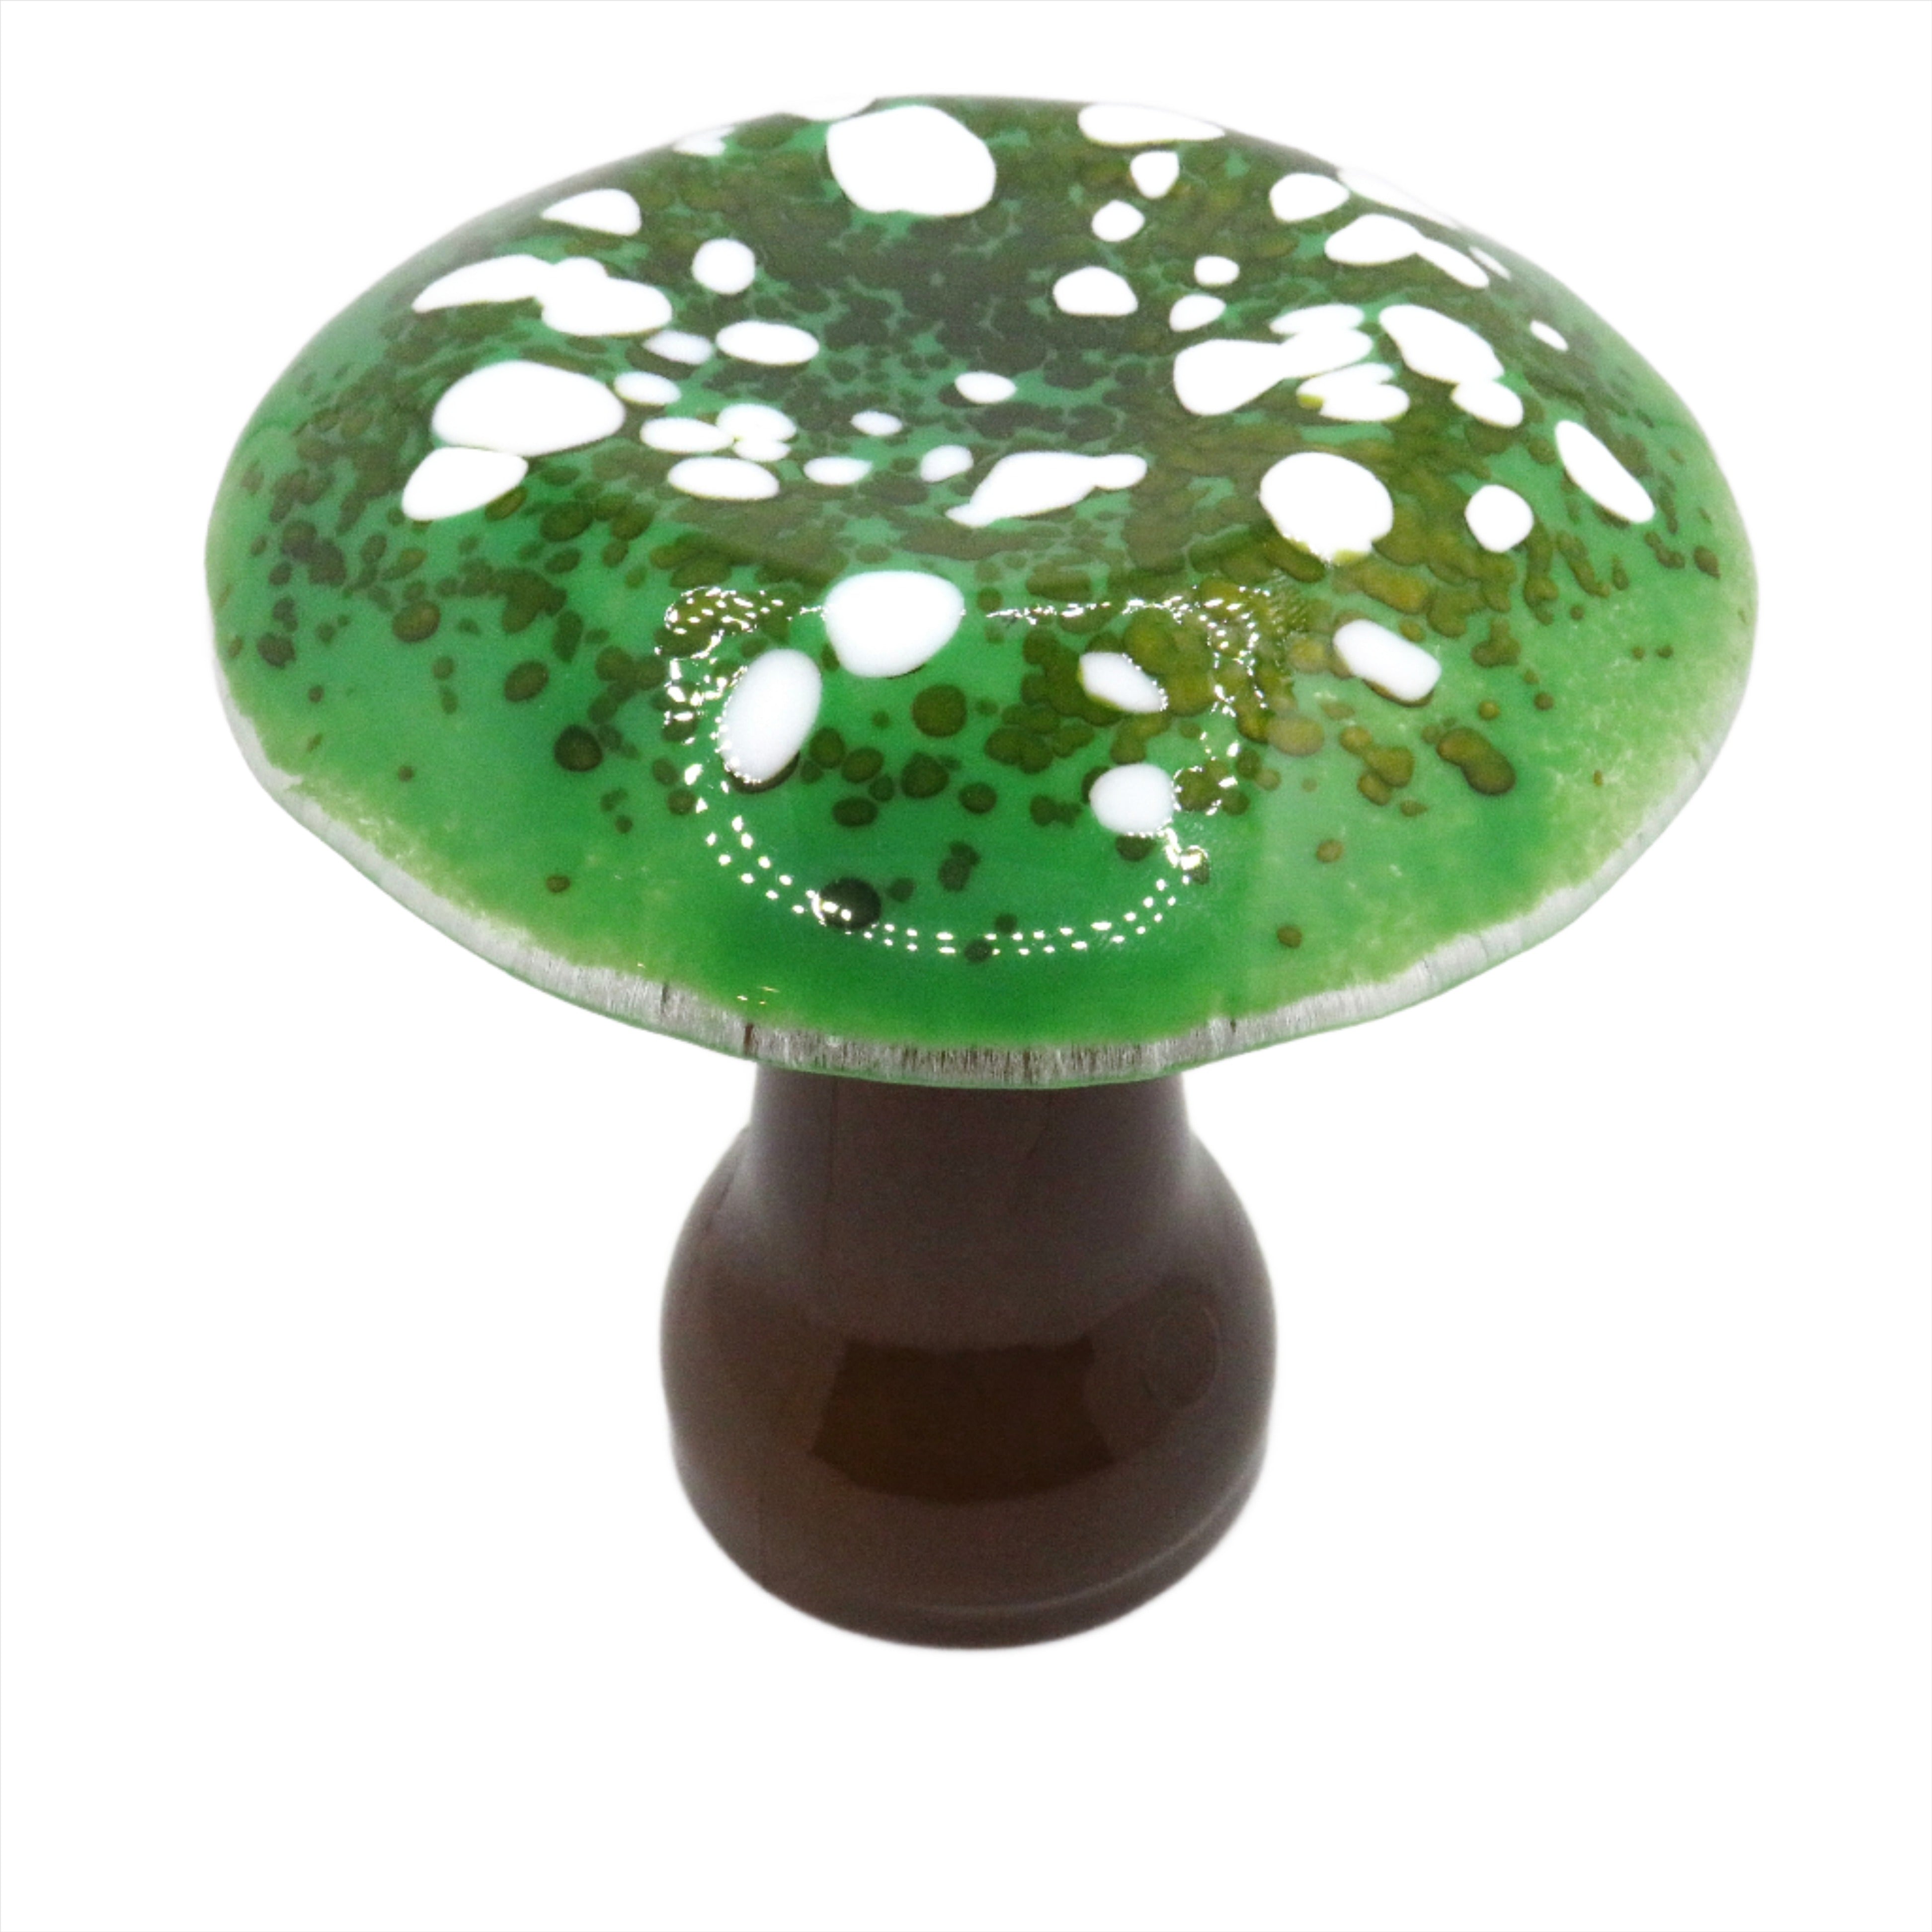 green glass mushroom night light